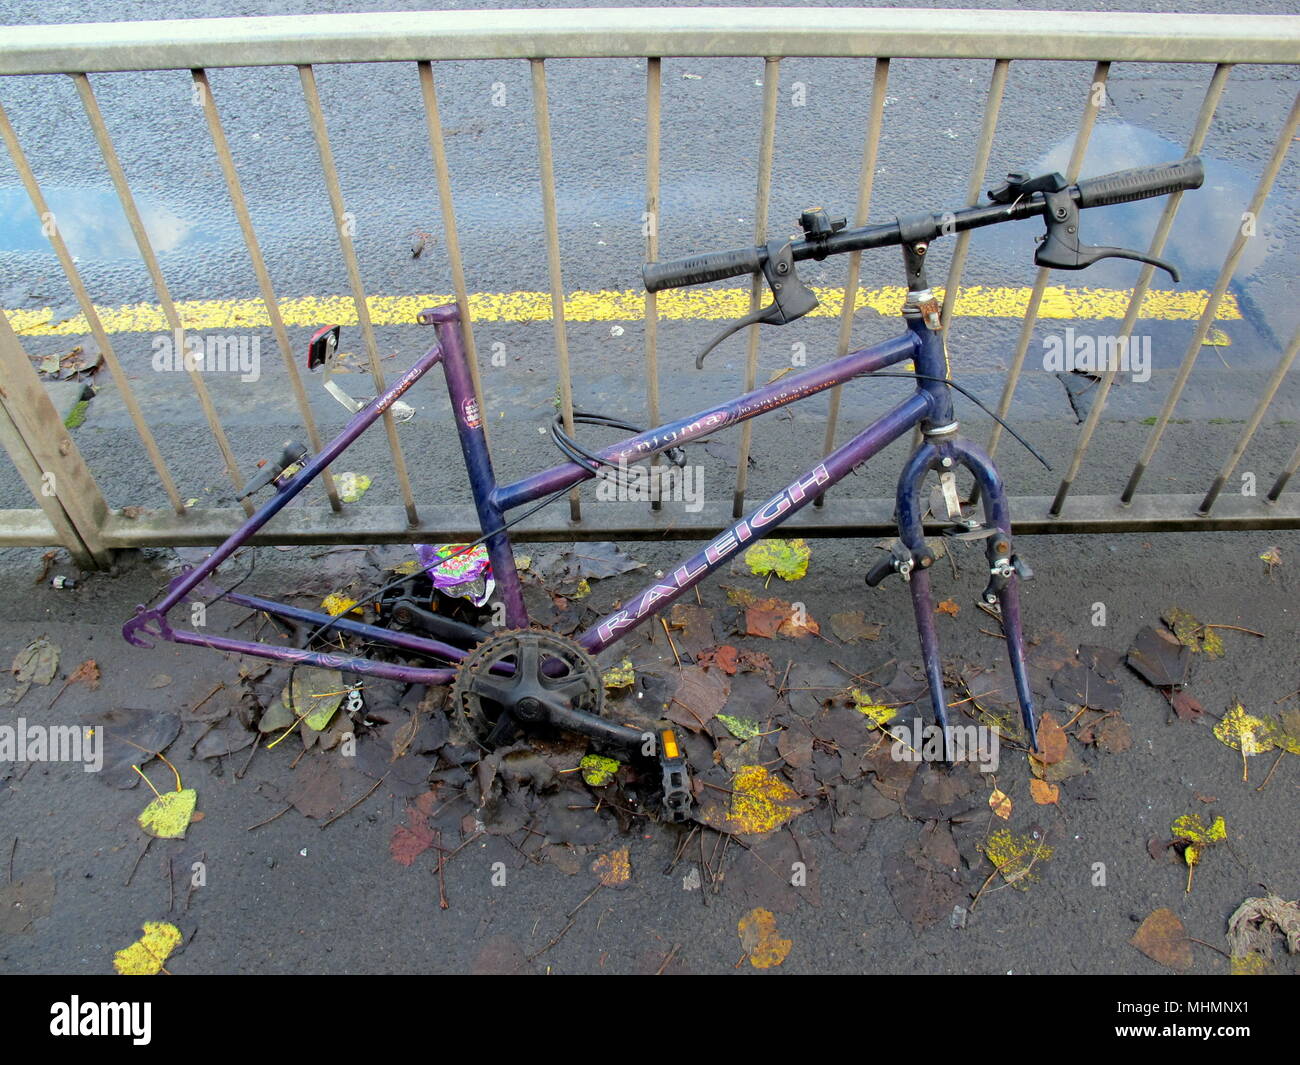 La Raleigh Bicycle Company Limited casse vélo abandonné volés voler les roues de vélo volé selle enchaîné les garde-corps de ligne jaune personne n'copyspace Banque D'Images